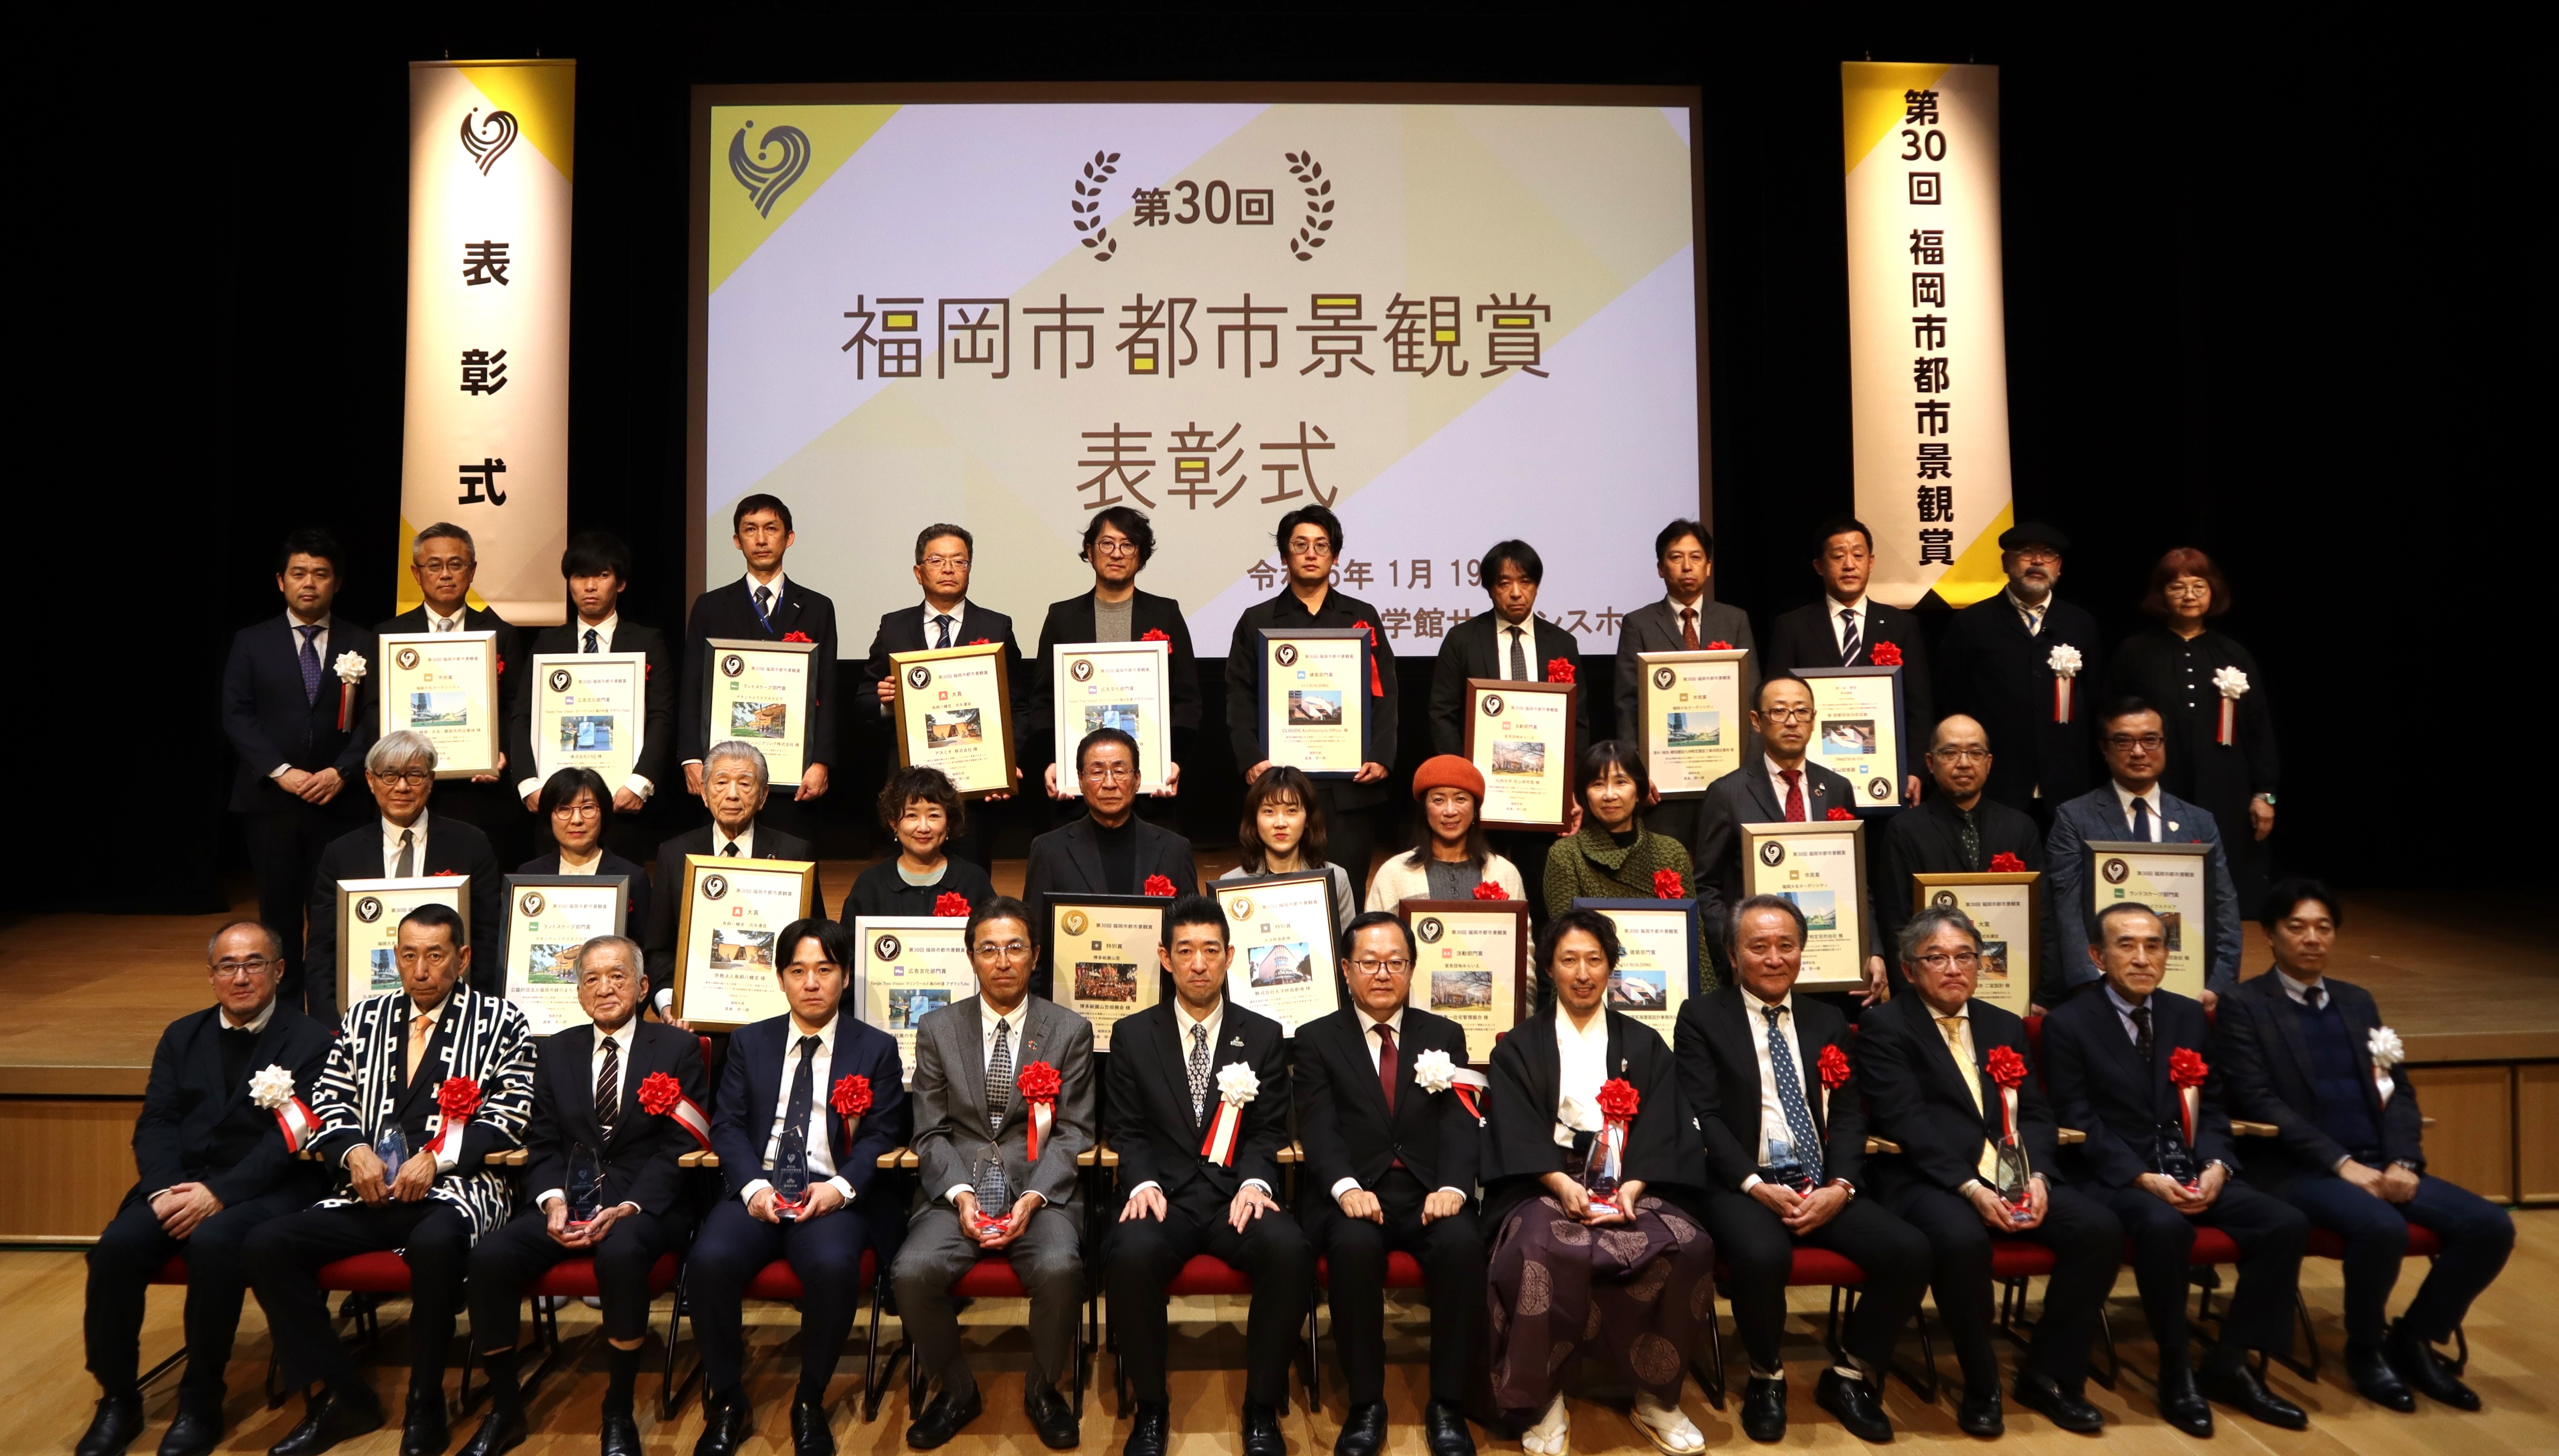 「第30回福岡市都市景観賞 表彰式」を開催いたしました。の画像1